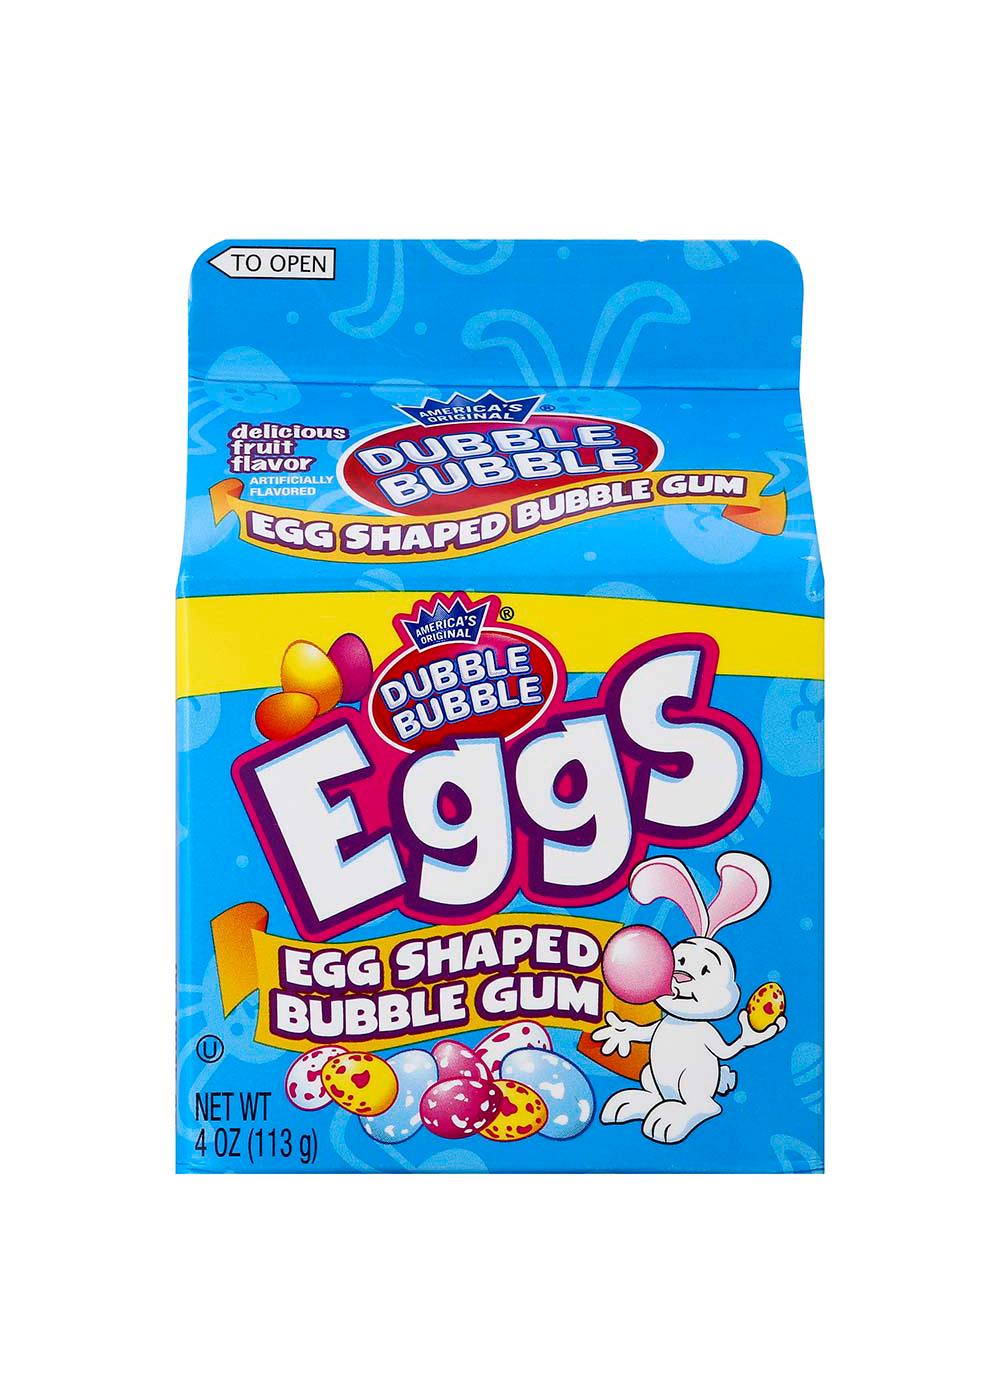 Dubble Bubble Bubble Gum Eggs Easter Carton; image 1 of 2